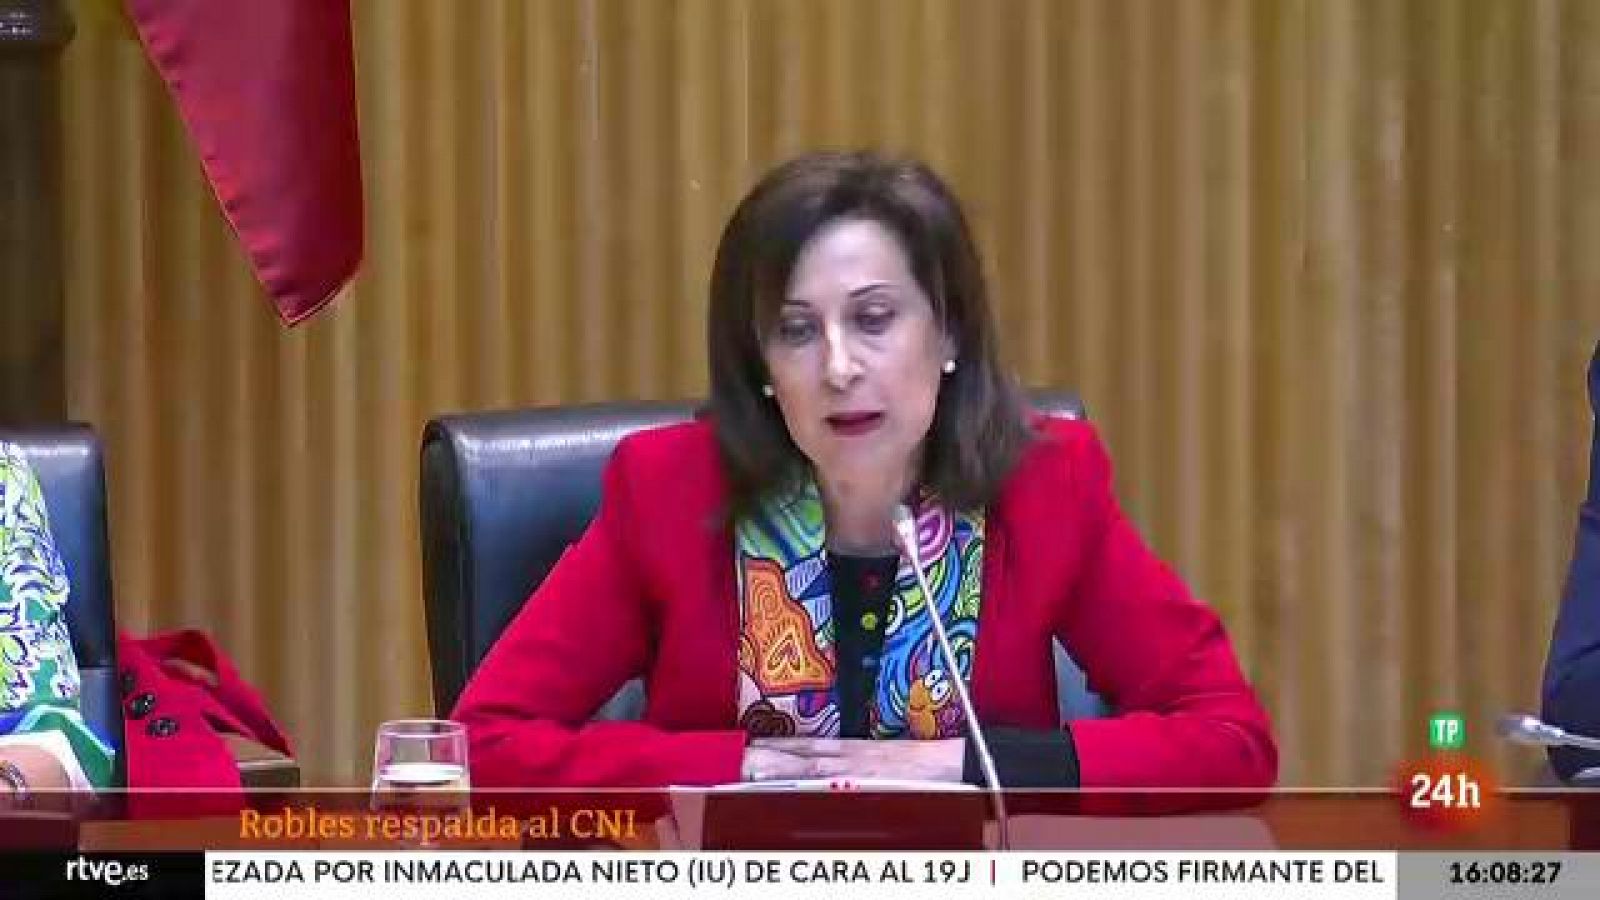 Parlamento - El foco parlamentario - Pegasus: Robles y la directora del CNI - 07/05/2022